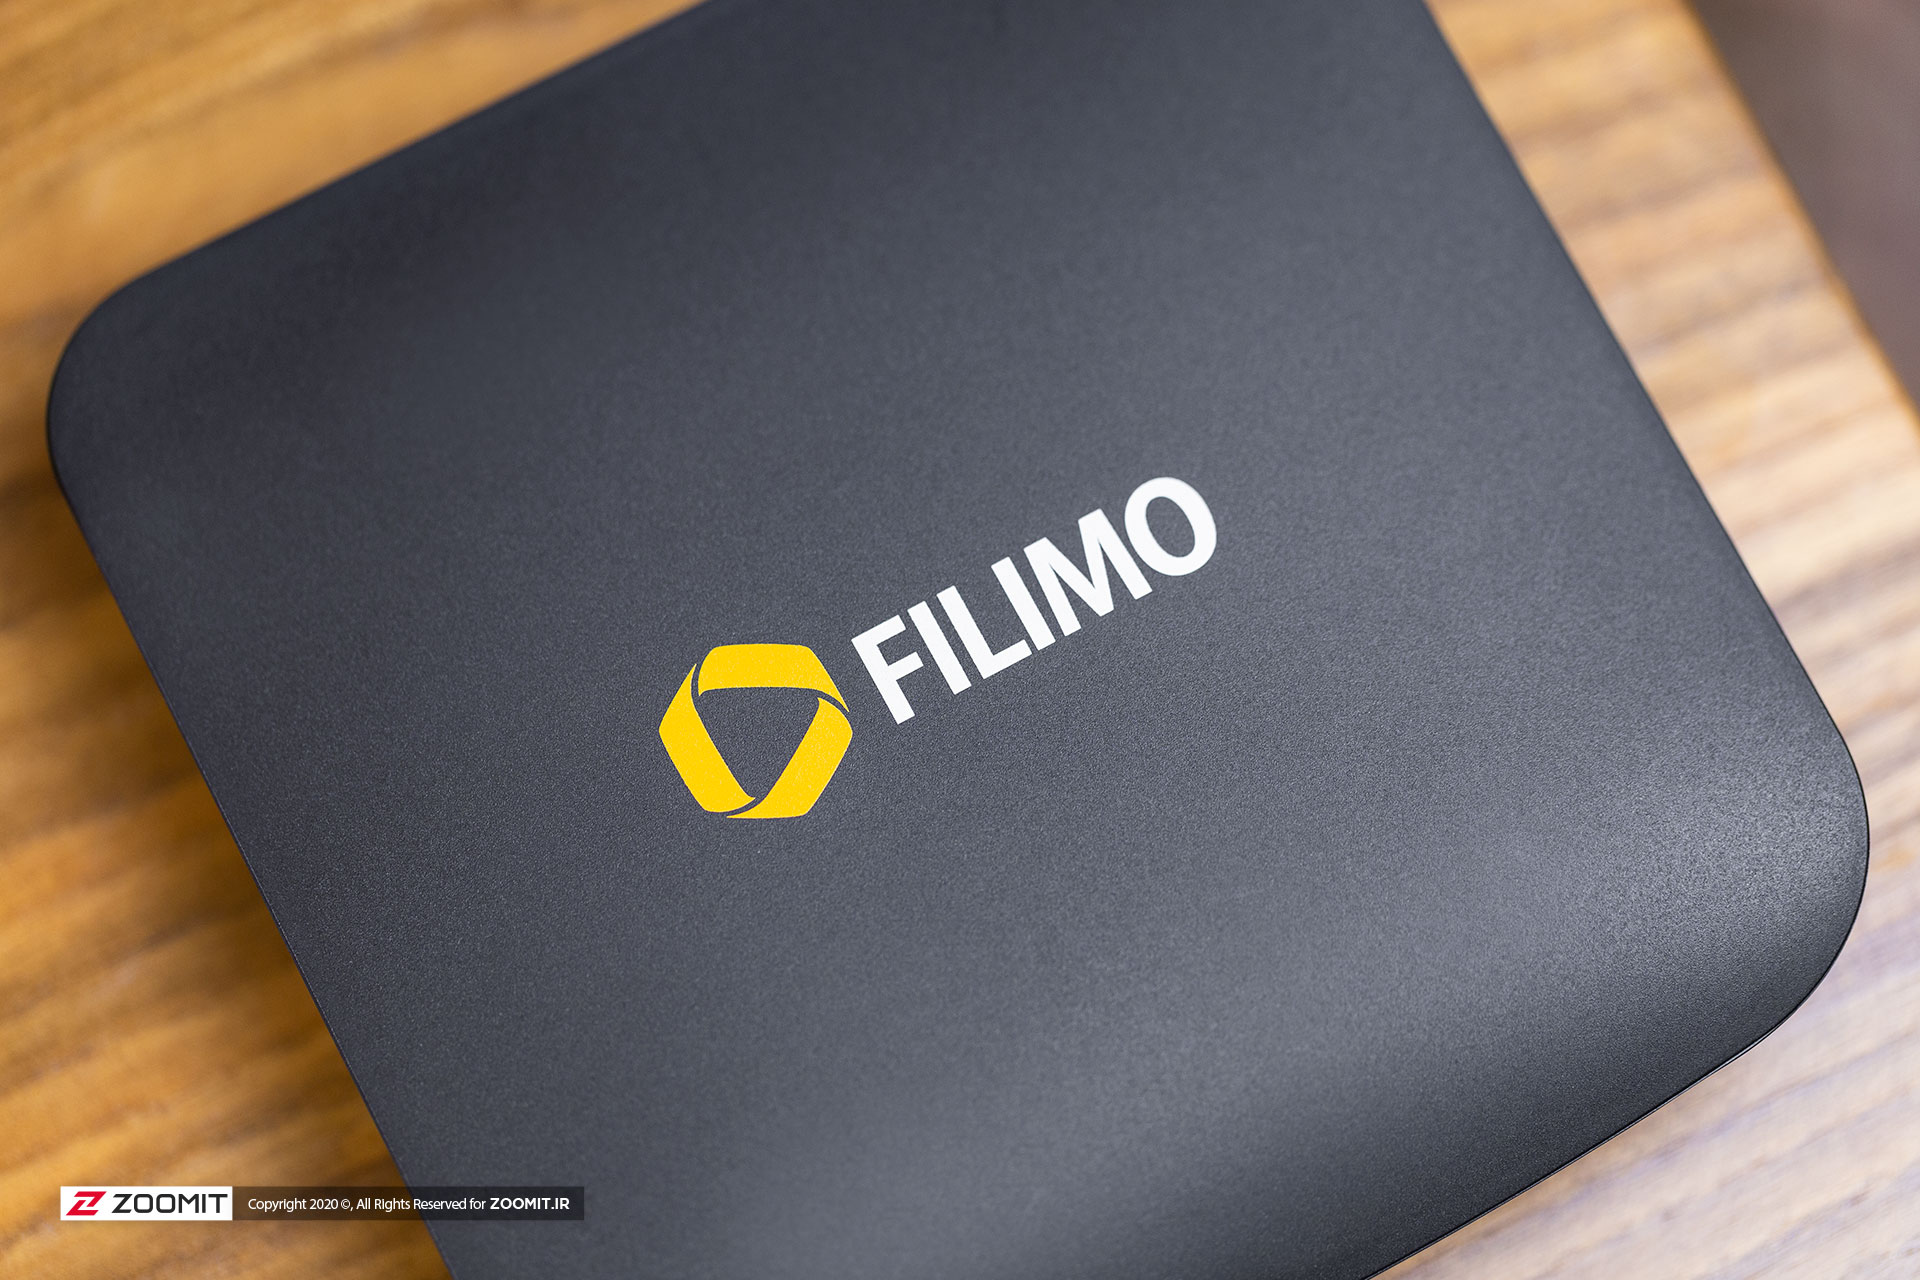 تصاویر بررسی فیلیمو باکس/Filimo Box